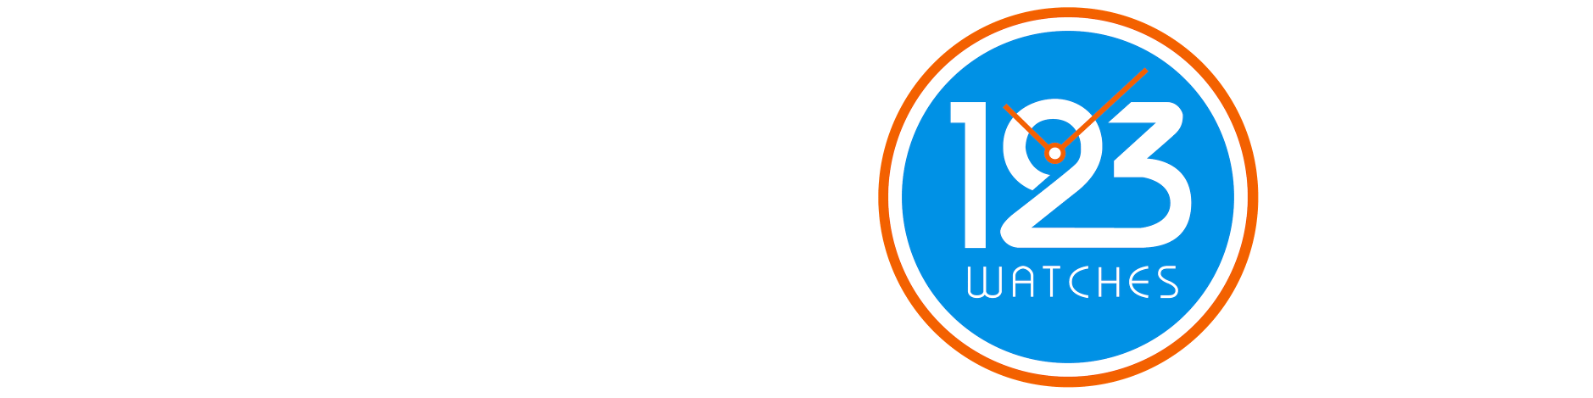 123watches- Logotipo - Valoraciones